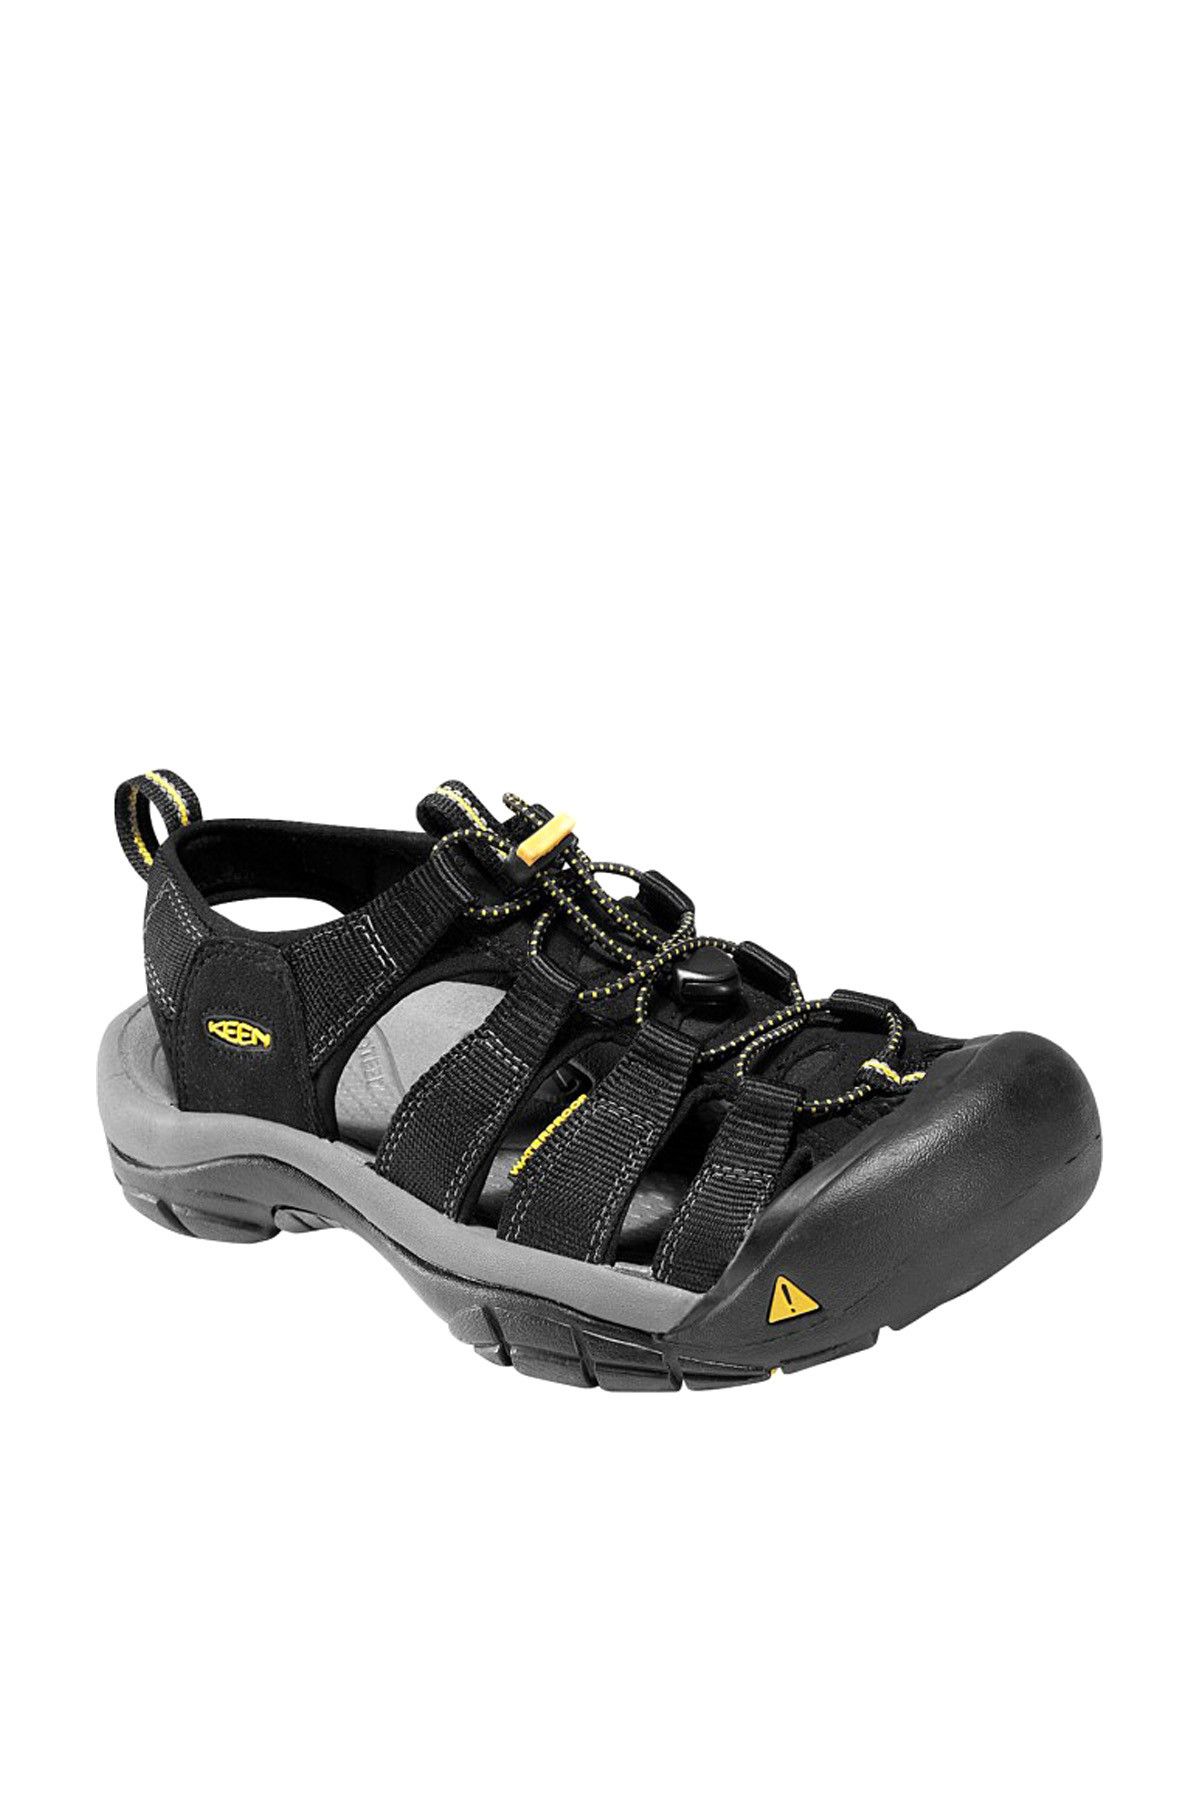 Keen 1001907 Newport H2 Waterproof Black Yellow Erkek Sandalet